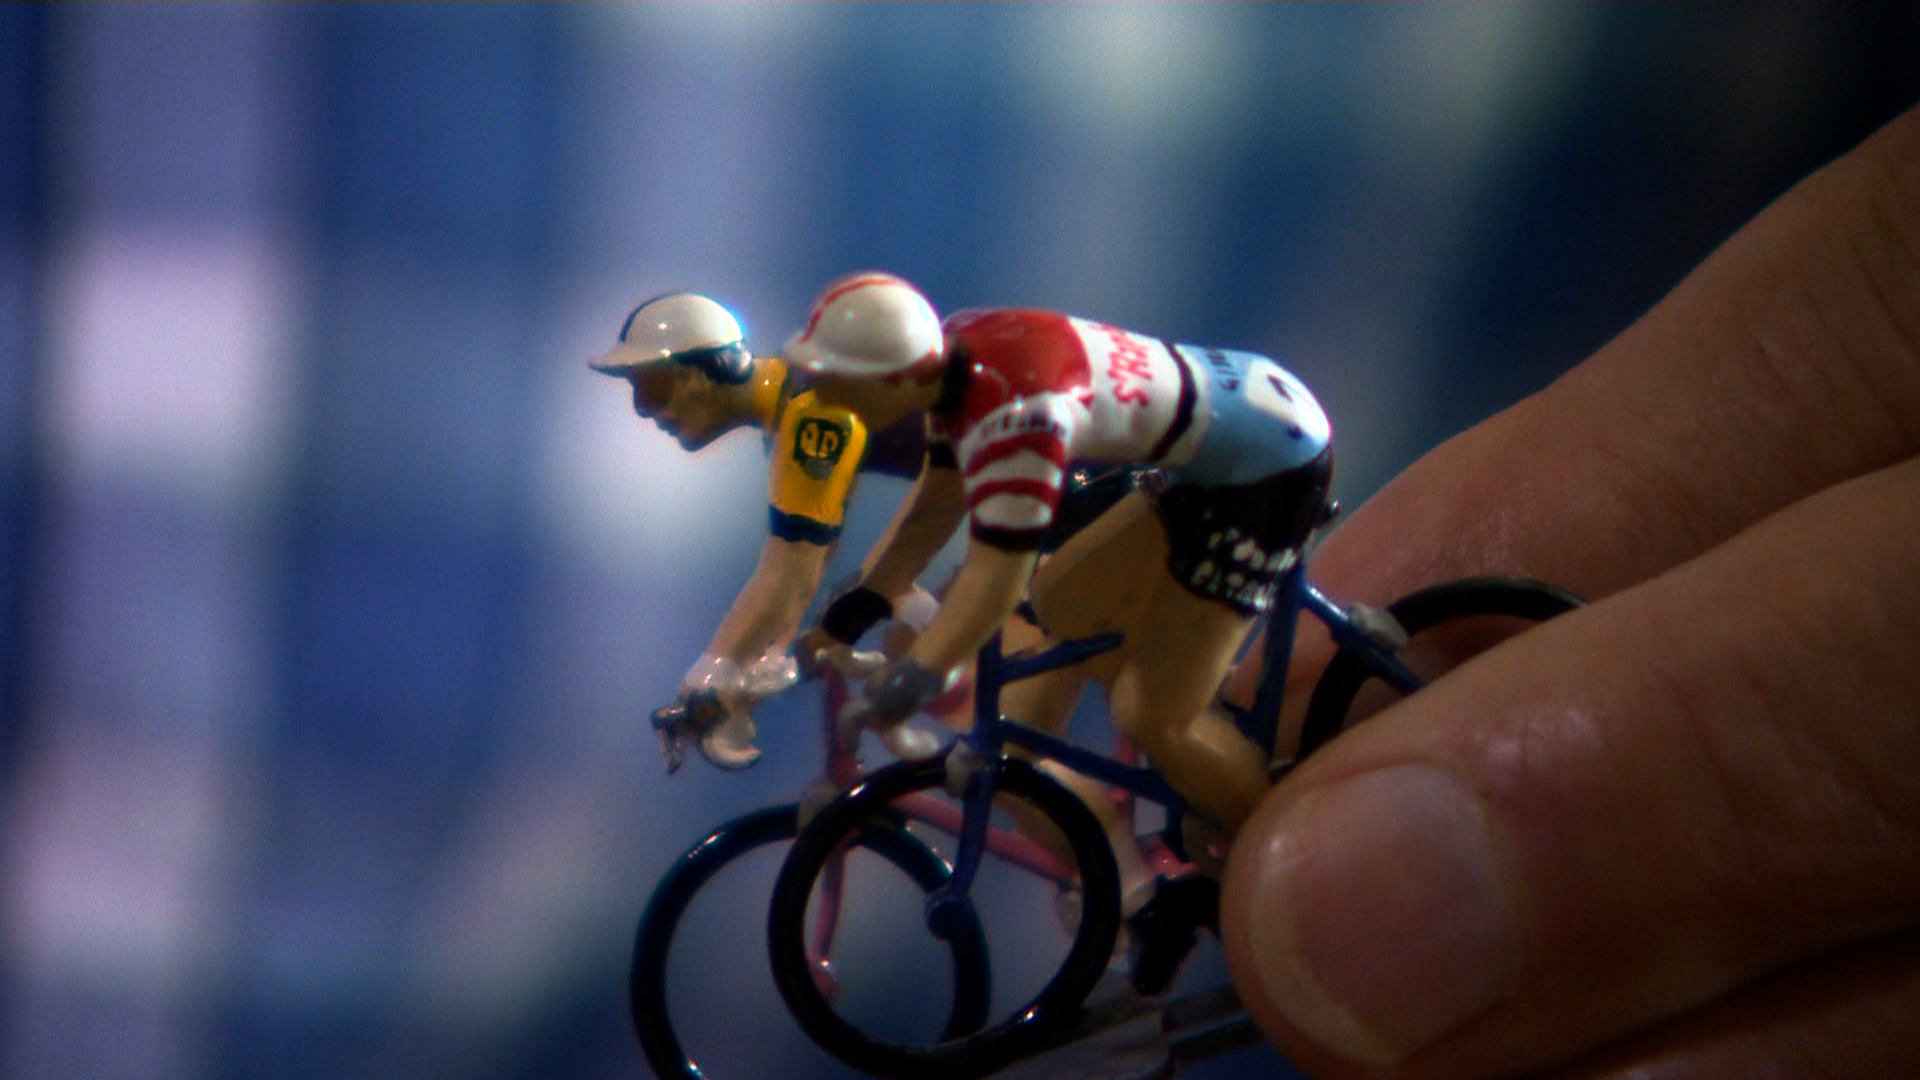 Anquetil le vainqueur, Poulidor le héros by Jean-Louis Saporito (Bip TV)